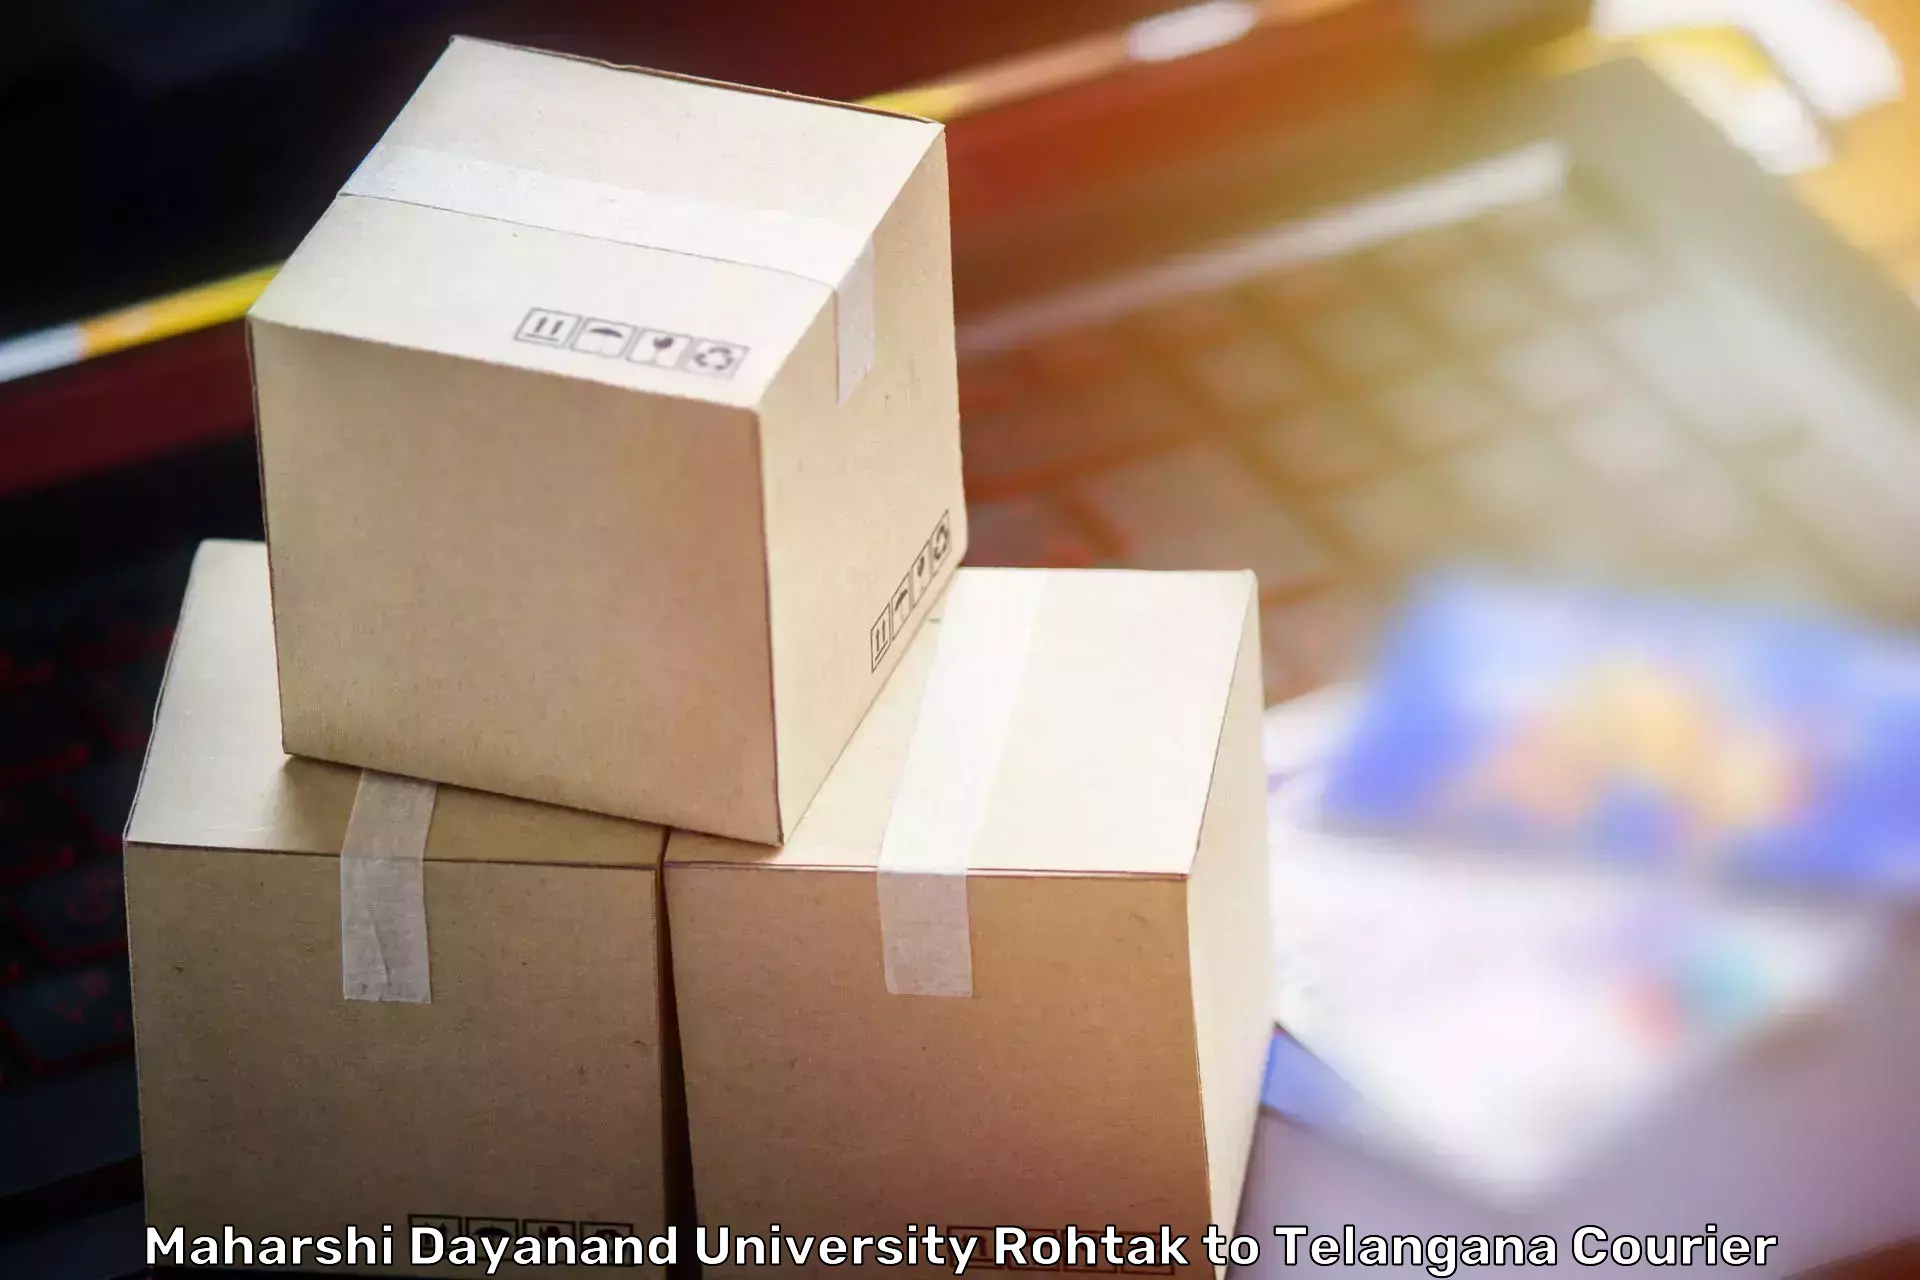 Furniture moving experts Maharshi Dayanand University Rohtak to Ramannapeta